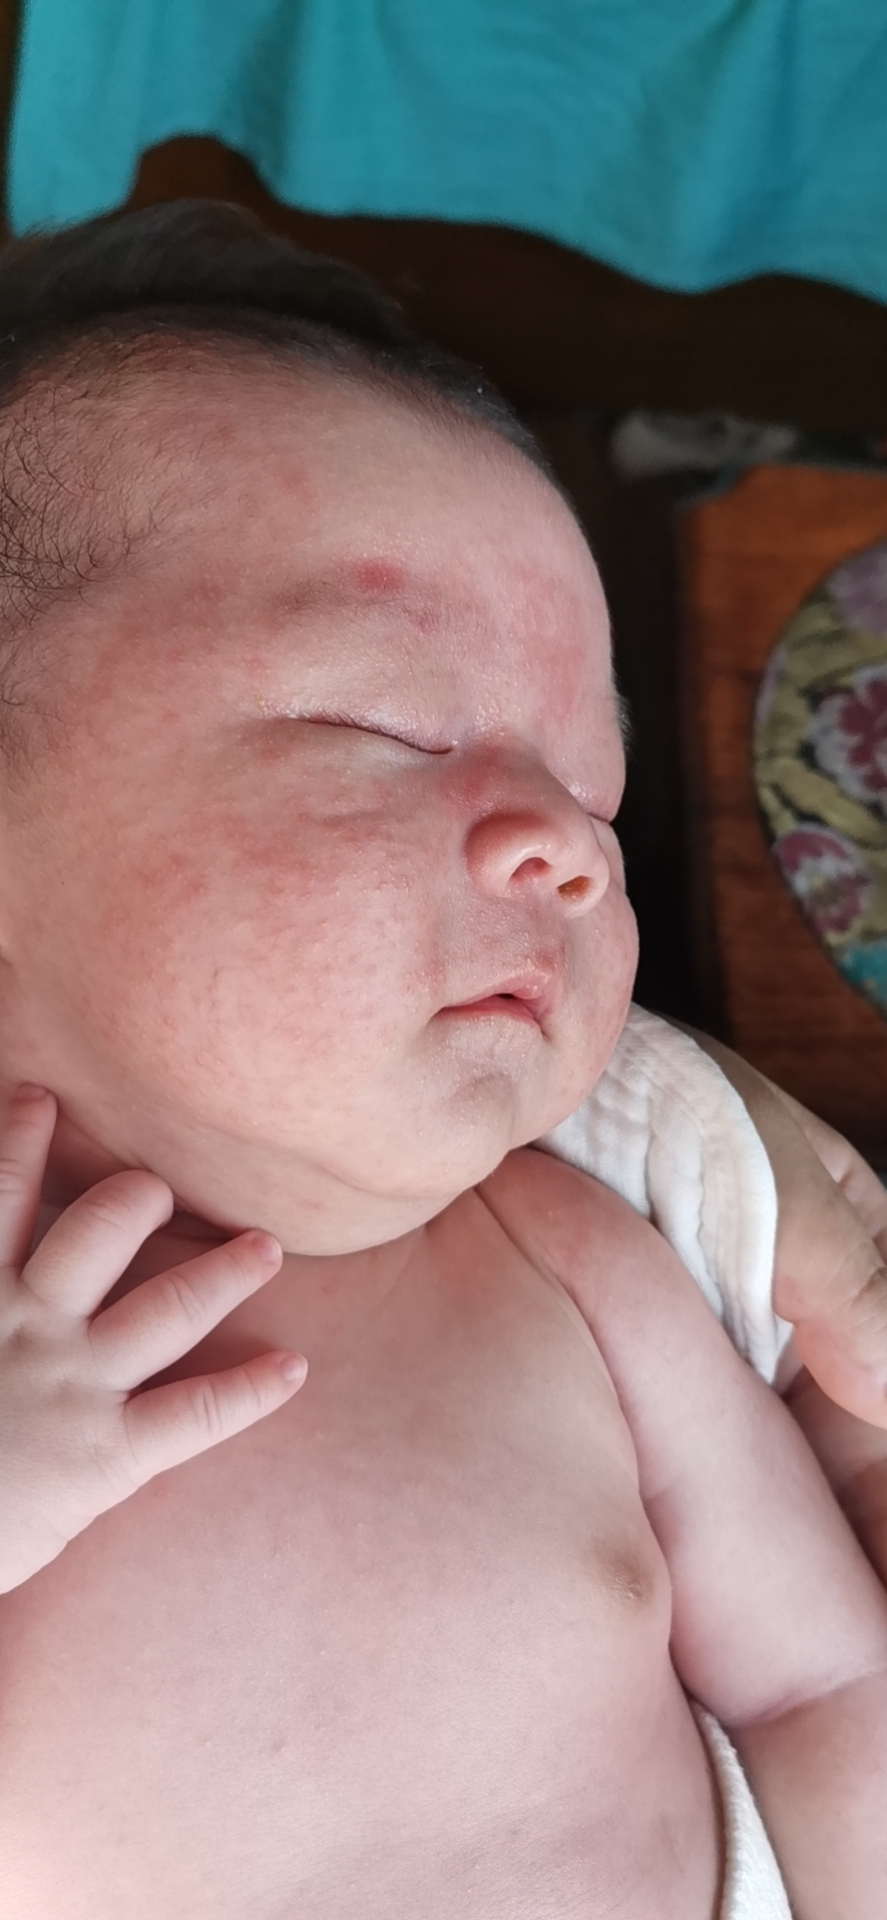 我家宝宝26天,脸上长满米粒大小的红疙瘩,有白顶,有说